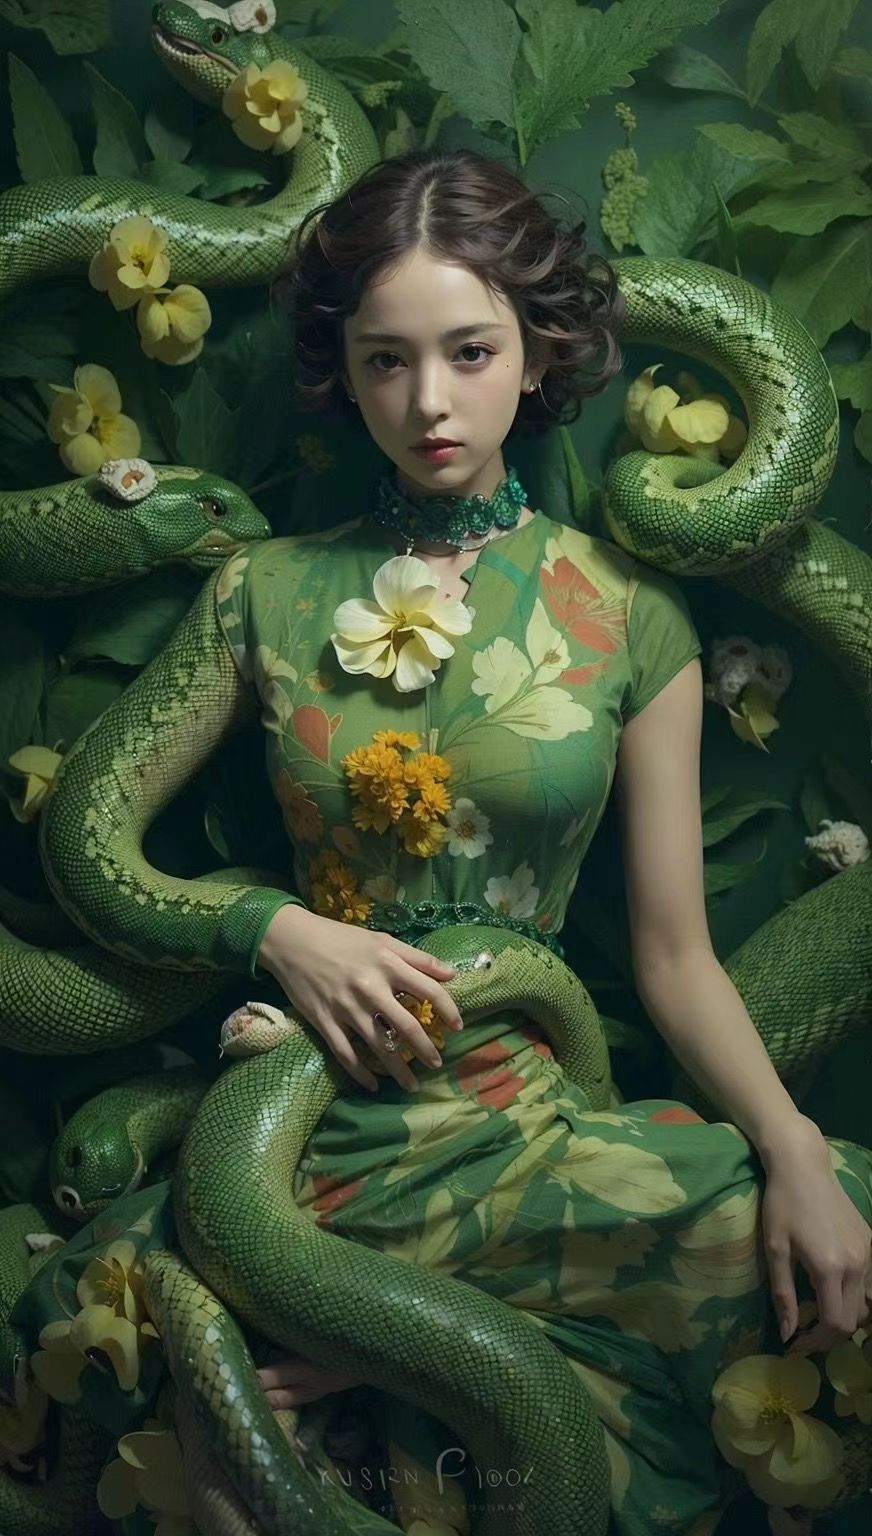 青蛇。 #妩媚女神风情万种 #高级的美一定是独立与优雅 #蛇系美人 #美出高级感